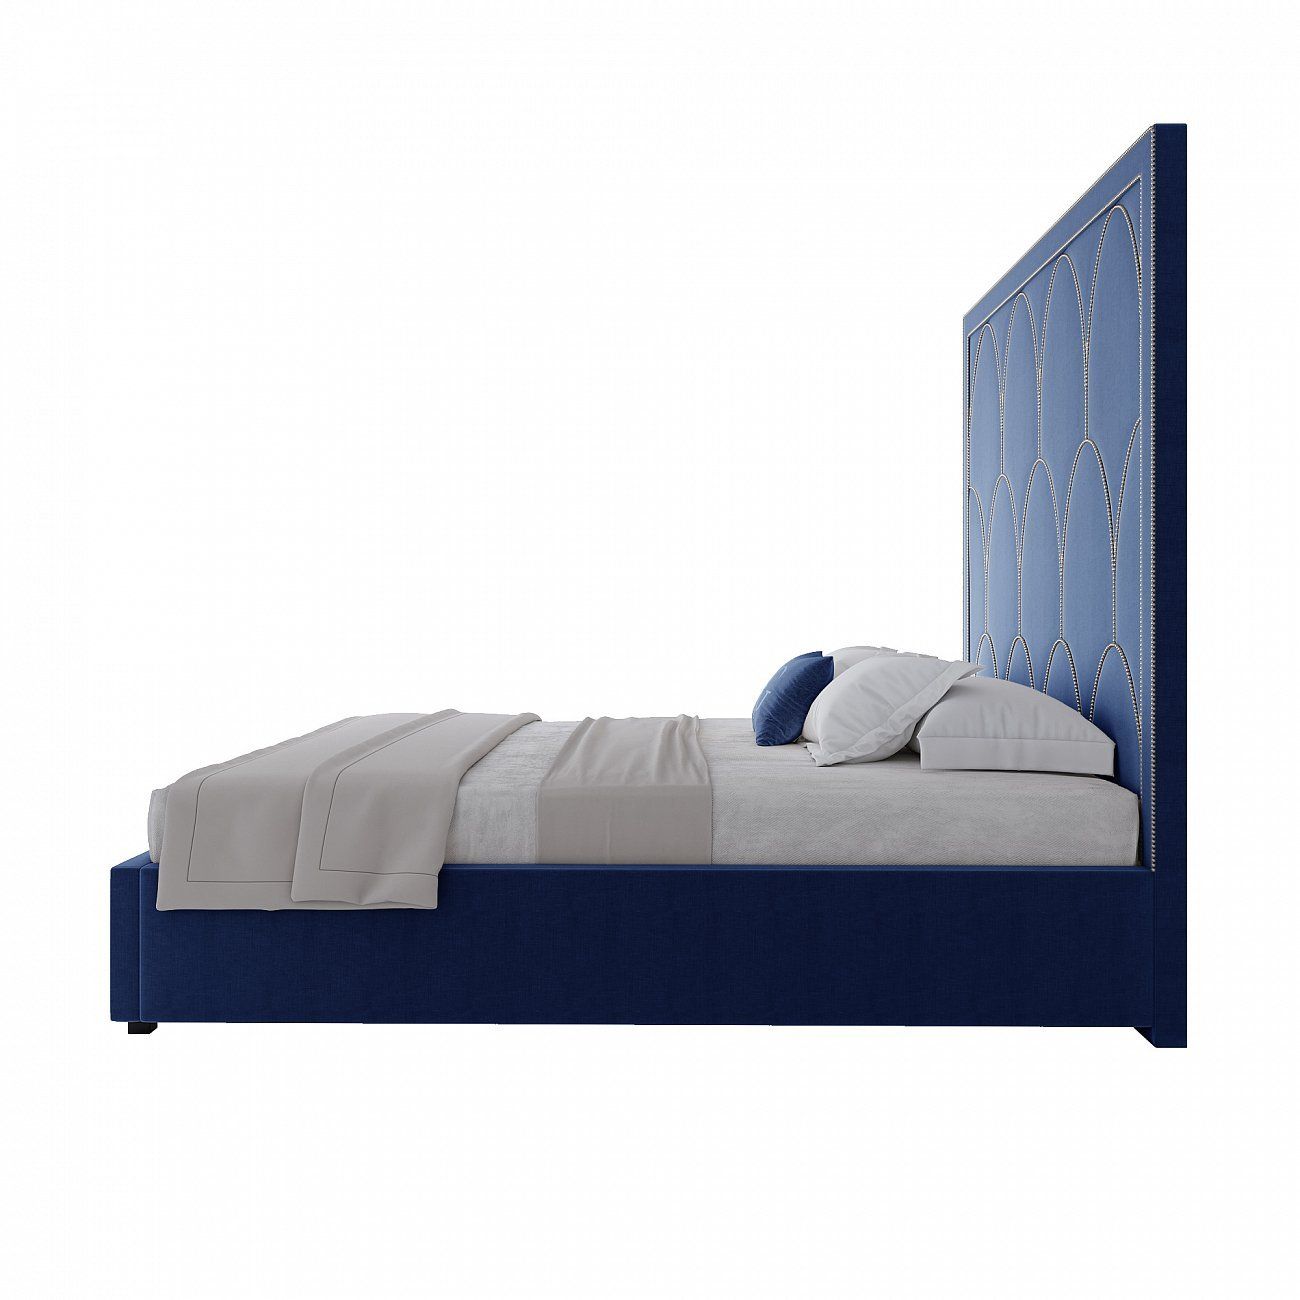 Double bed 180x200 cm blue Petals Queen